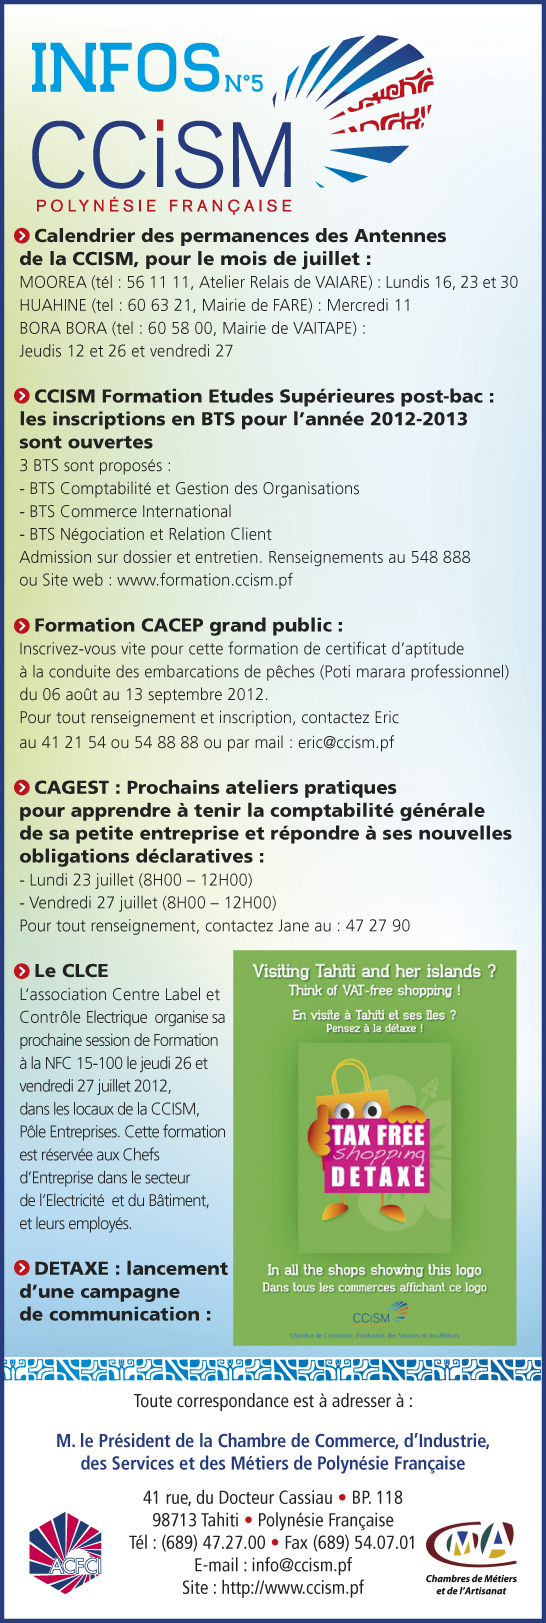 Infos CCISM N°5